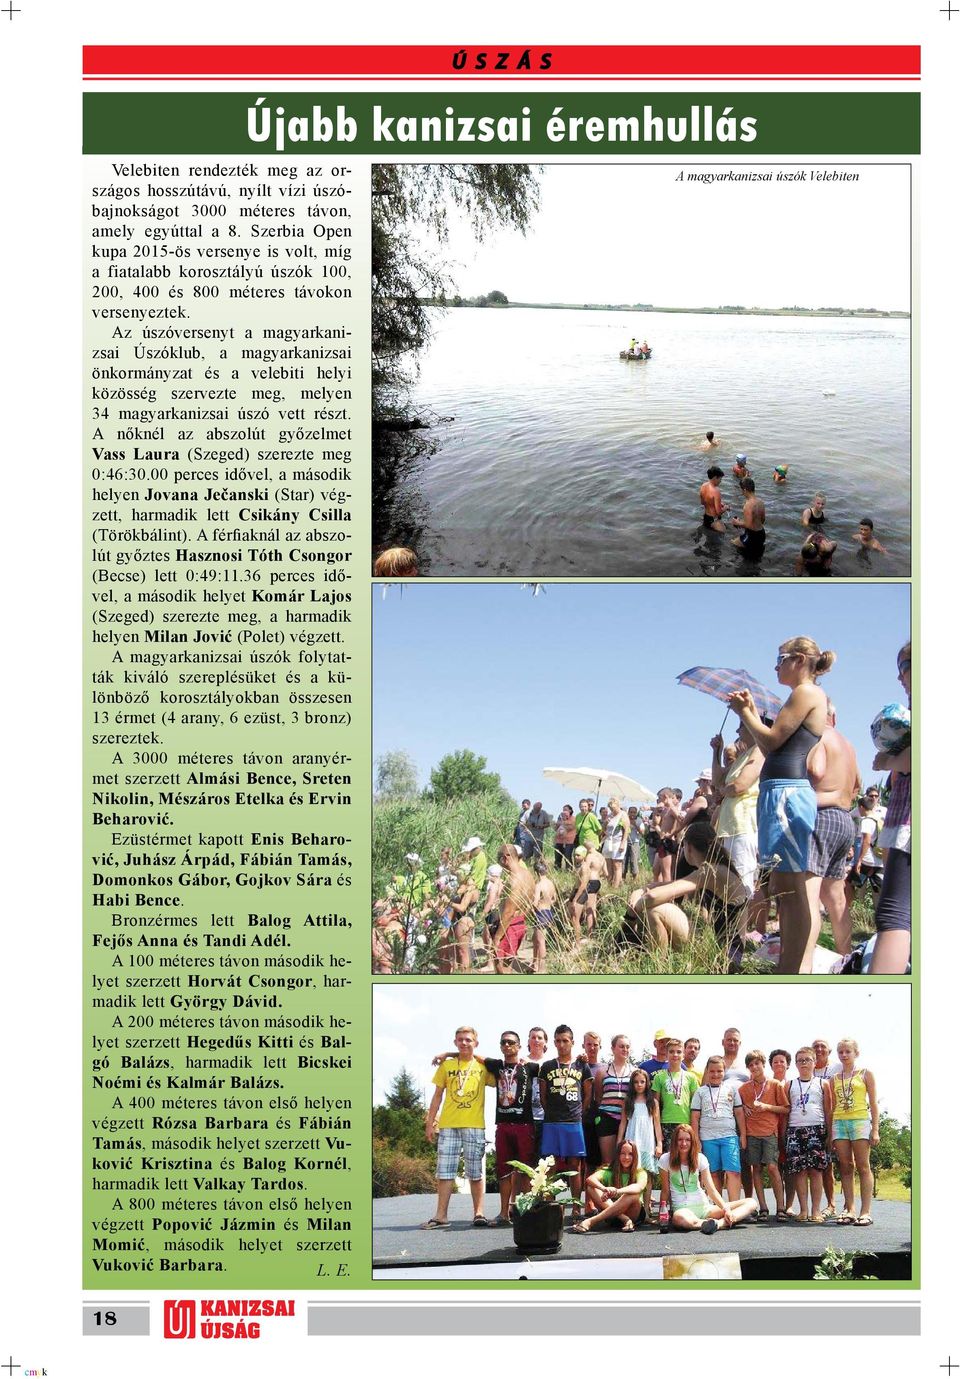 Az úszóversenyt a magyarkanizsai Úszóklub, a magyarkanizsai önkormányzat és a velebiti helyi közösség szervezte meg, melyen 34 magyarkanizsai úszó vett részt.